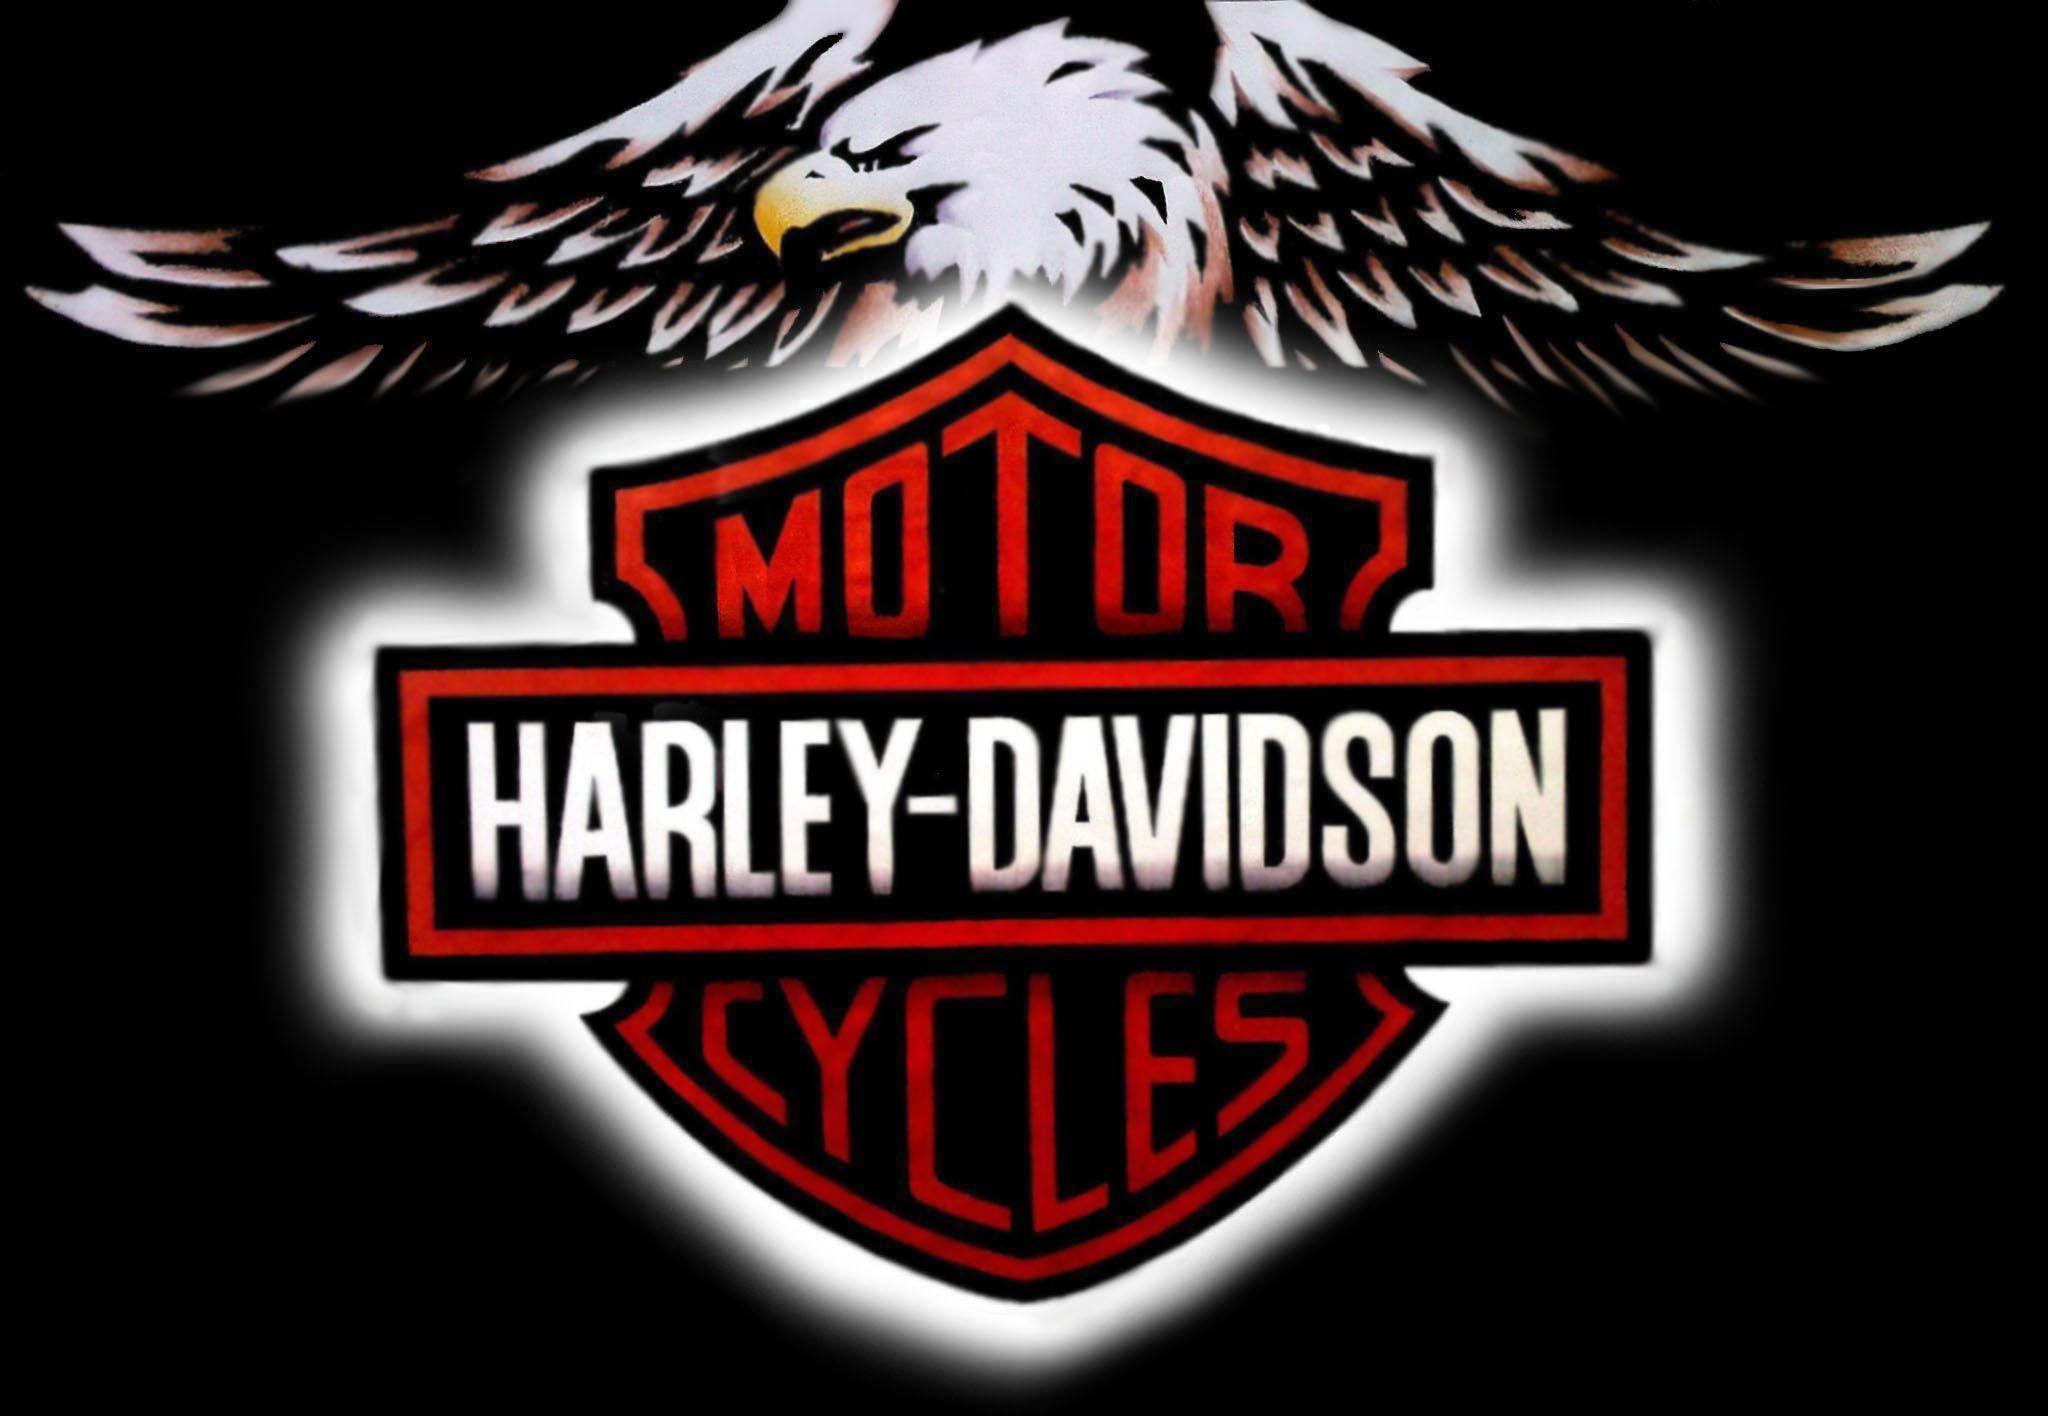 Best image about Harley Davidson. Eagle